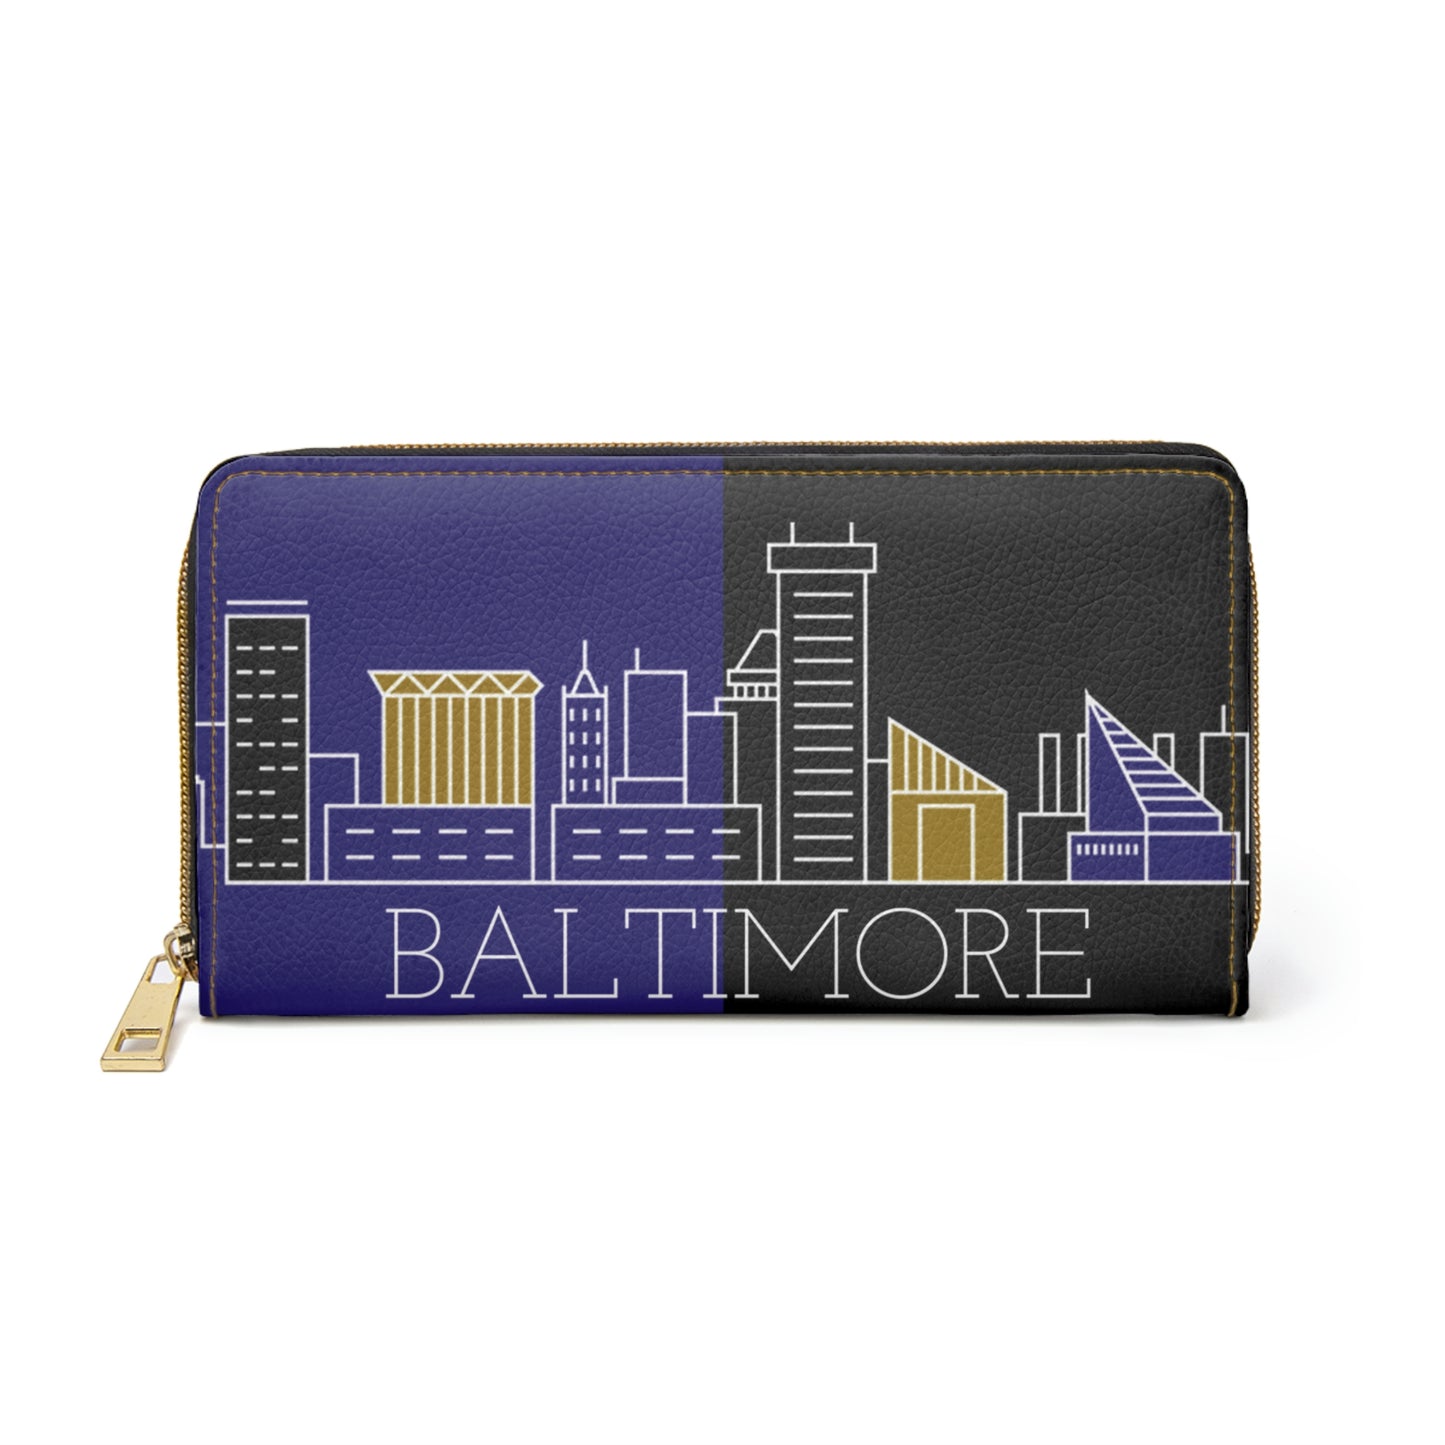 Baltimore - City series - Zipper Wallet